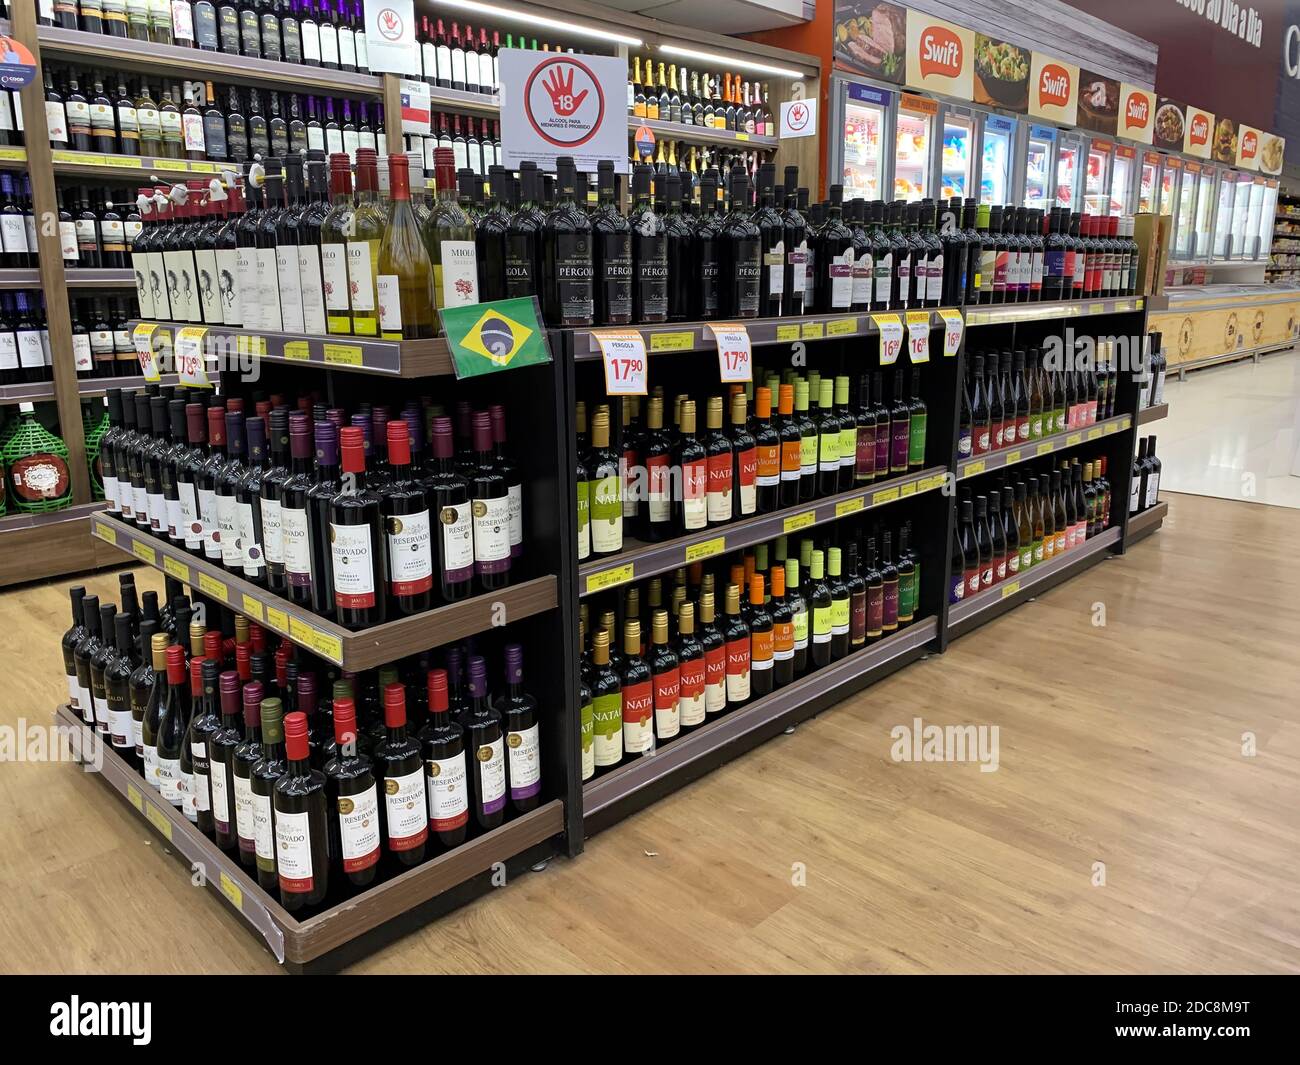 November 2020. São Paulo, SP, Brasilien. Stock mit Sorten von brasilianischen Weinen in einem Supermarkt. Stockfoto